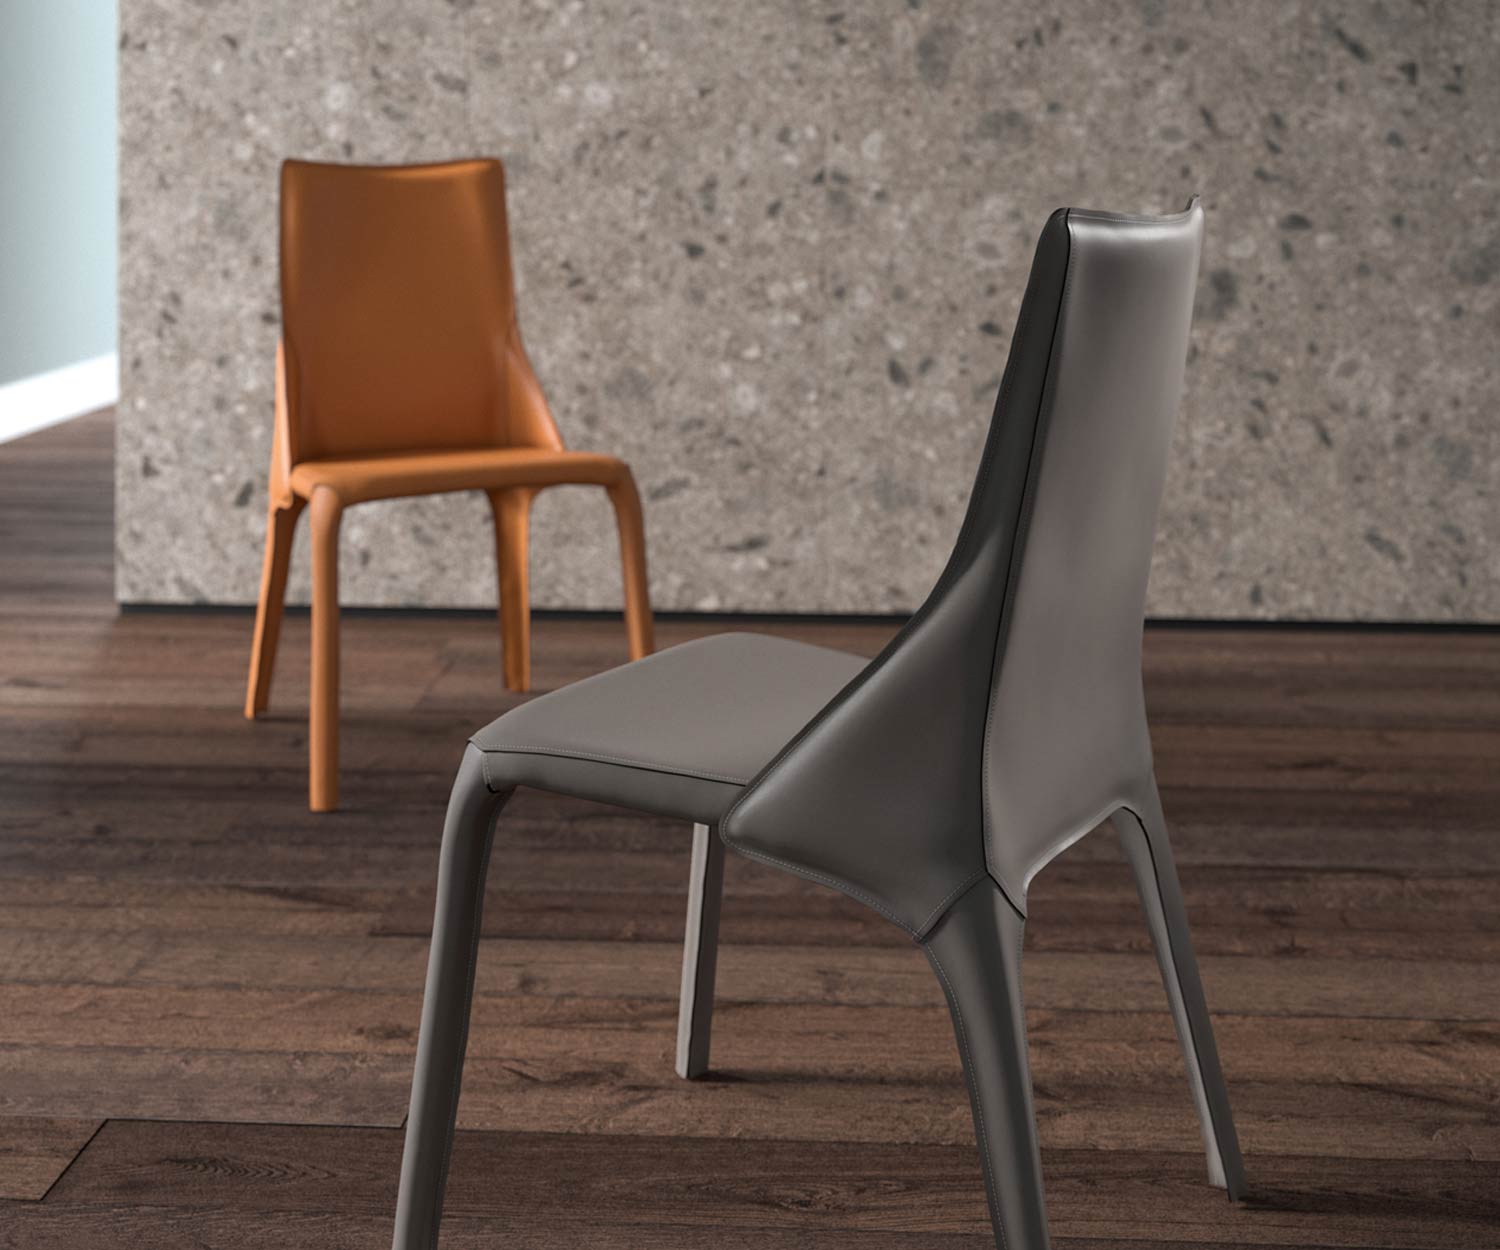 Chaise en cuir design deux chaises en cuir en détail dans les couleurs cognac et gris foncé